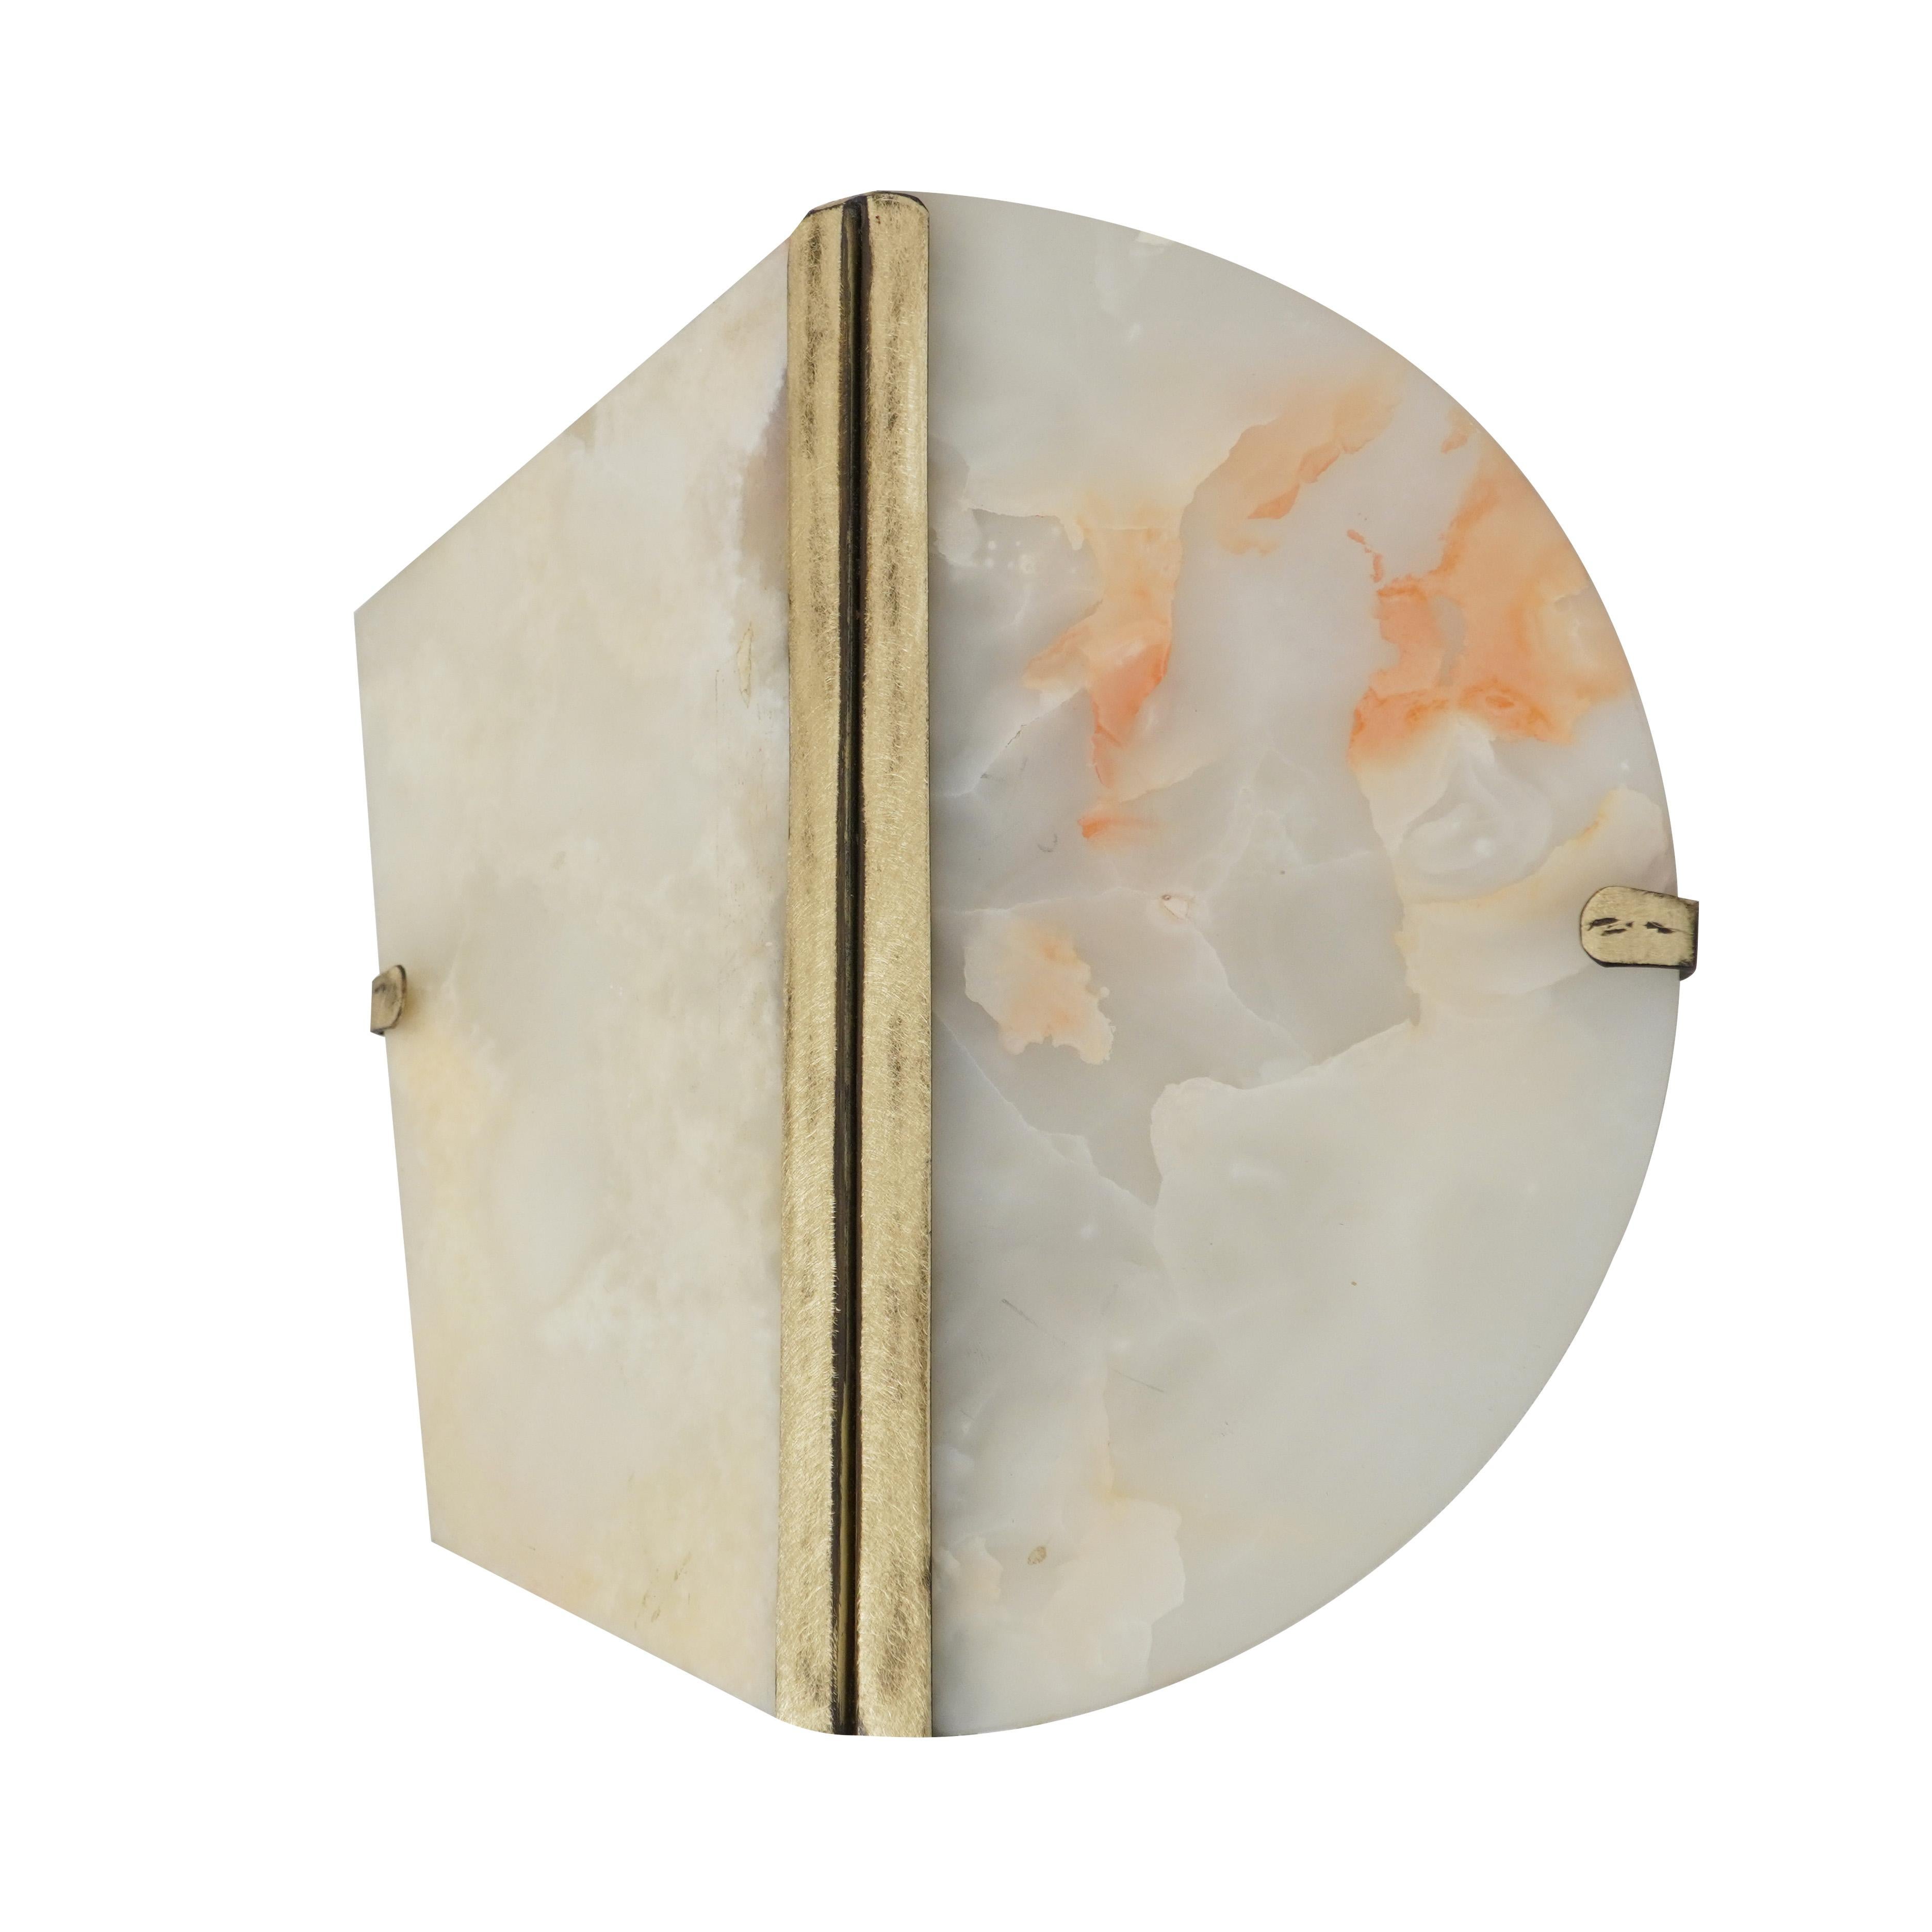 TWO-BE Wandleuchte Onix Stein

Vollständig in der Toskana, Italien, hergestellt.
Dieses Objekt ist ein -immer schönes- Stück, um Innenräume vom klassischen bis zum zeitgenössischen Stil zu dekorieren.

Die Herzen von Two-Be, entworfen von Sabrina